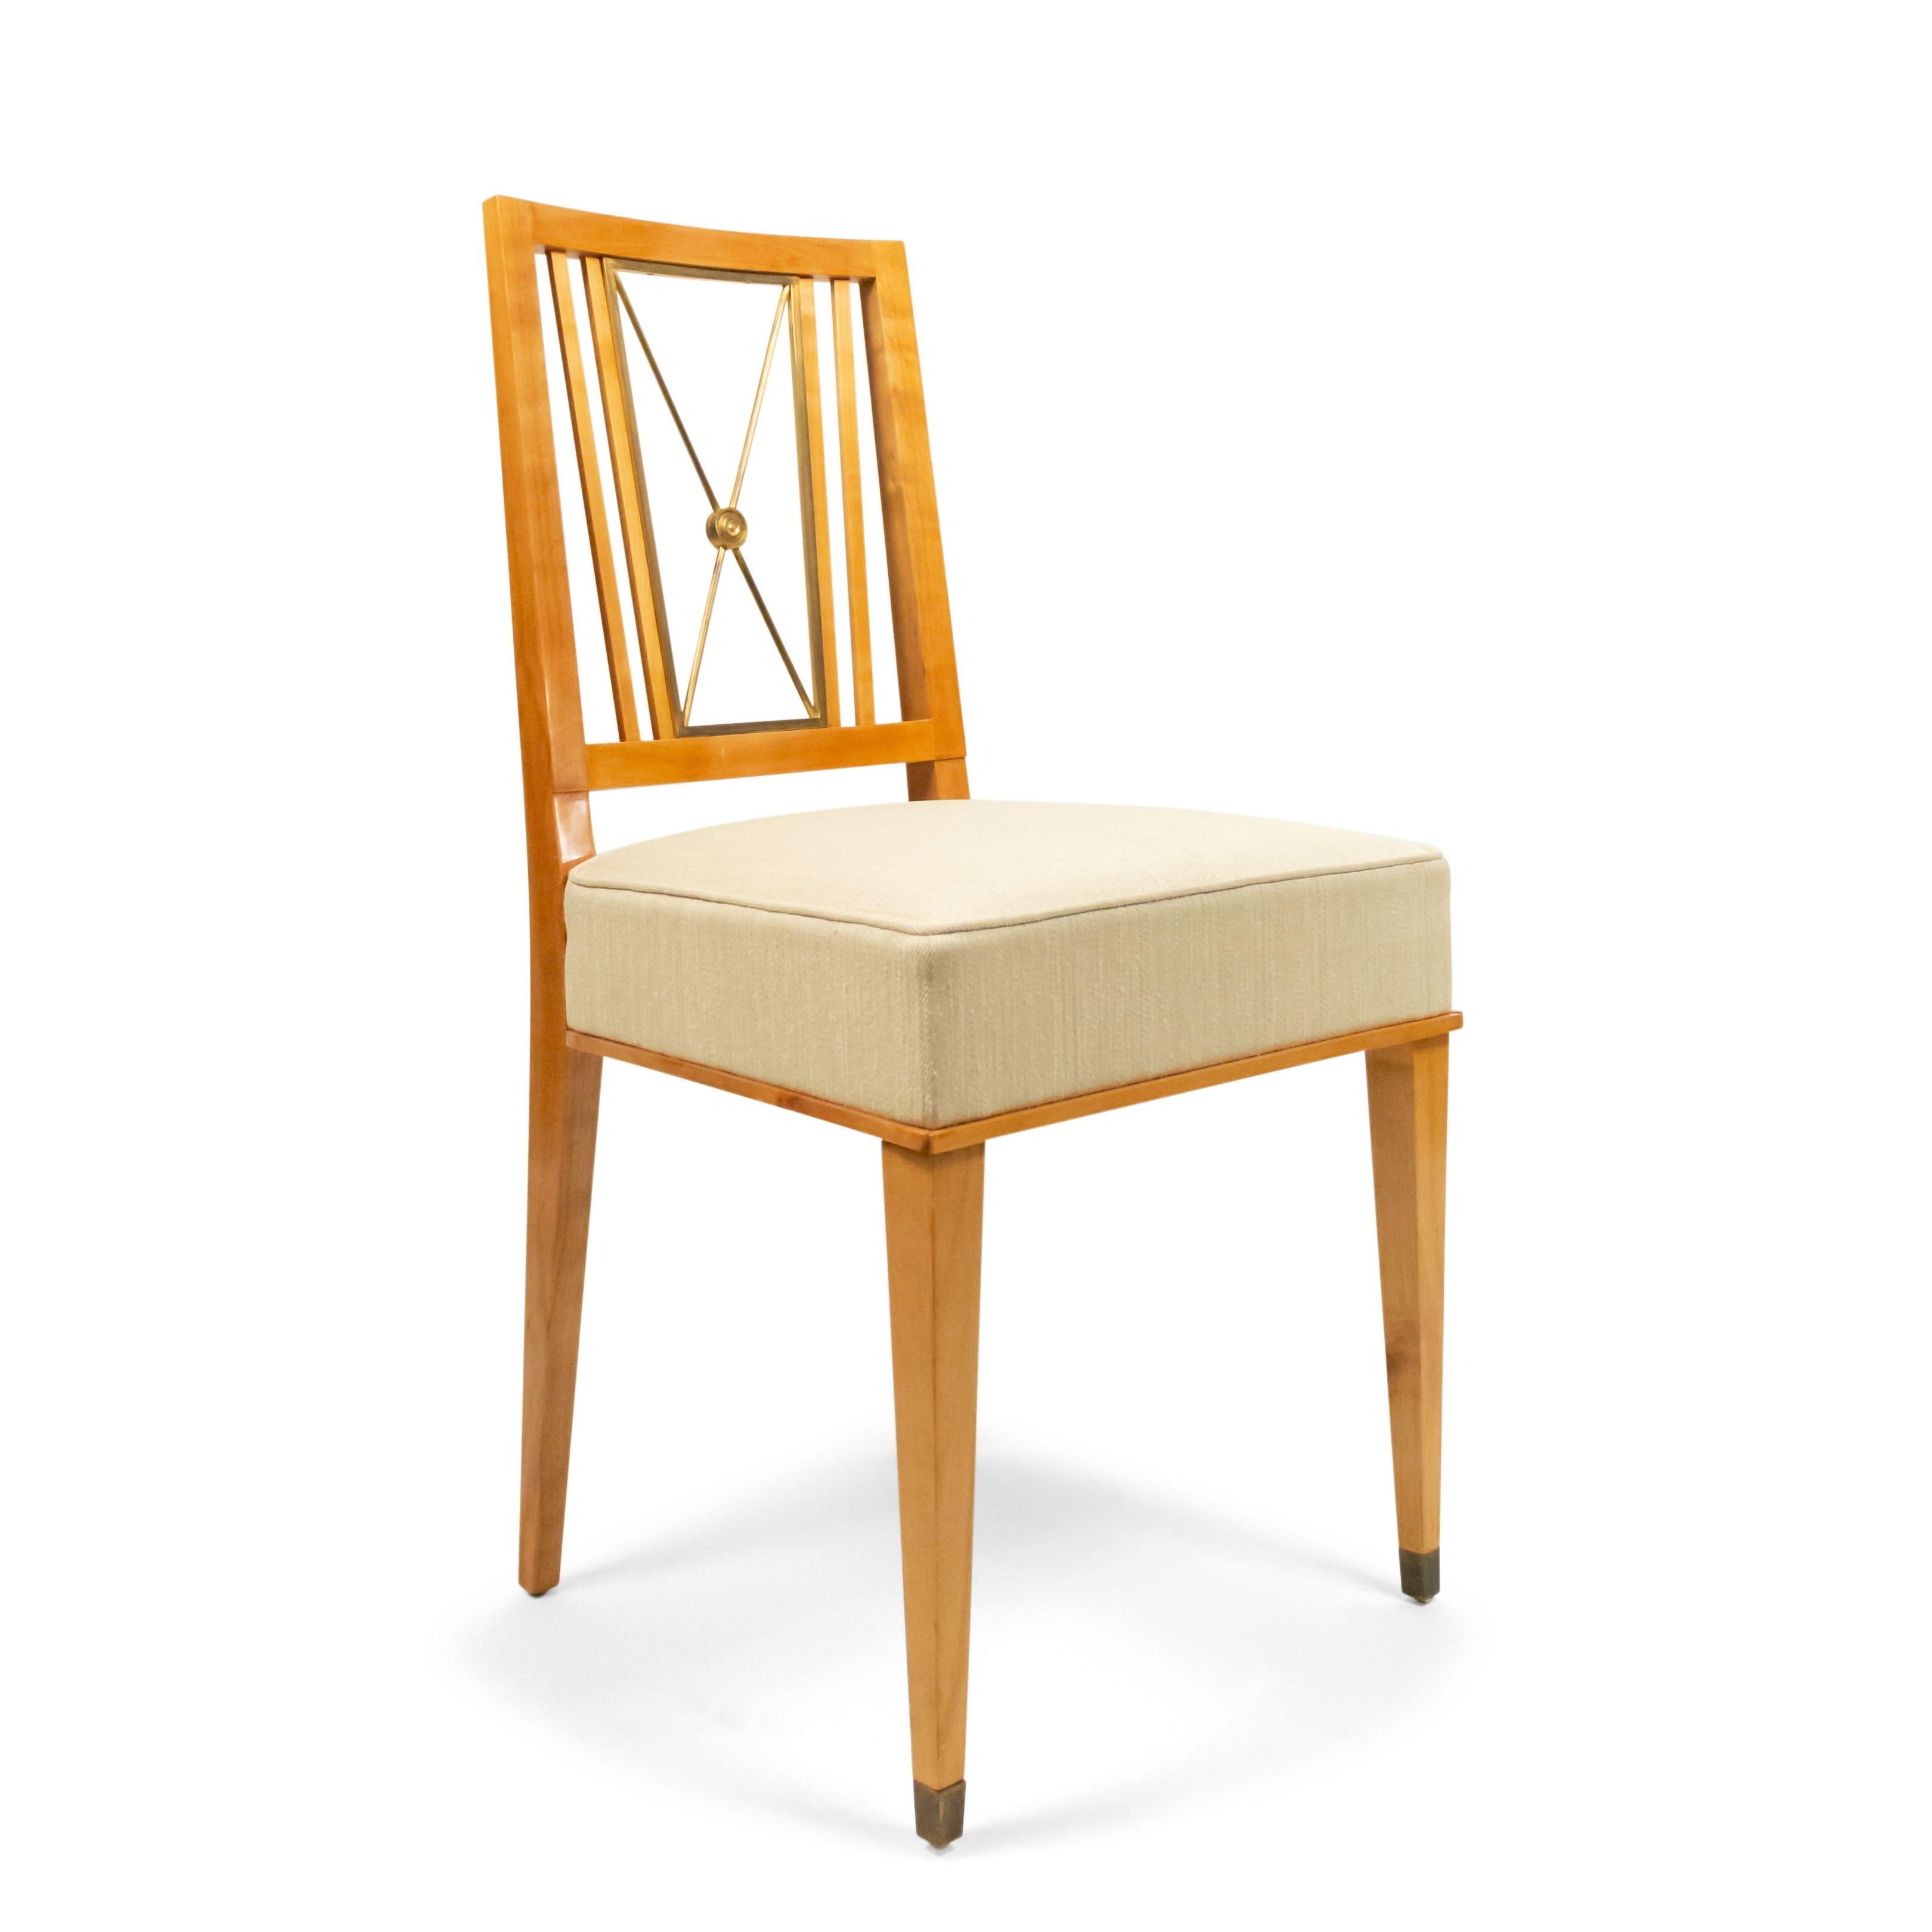 Ensemble de 8 chaises d'appoint françaises des années 1940 en laiton et érable avec dossier ouvert en forme de X et assise tapissée de soie fauve (att : JACQUES ADNET)
